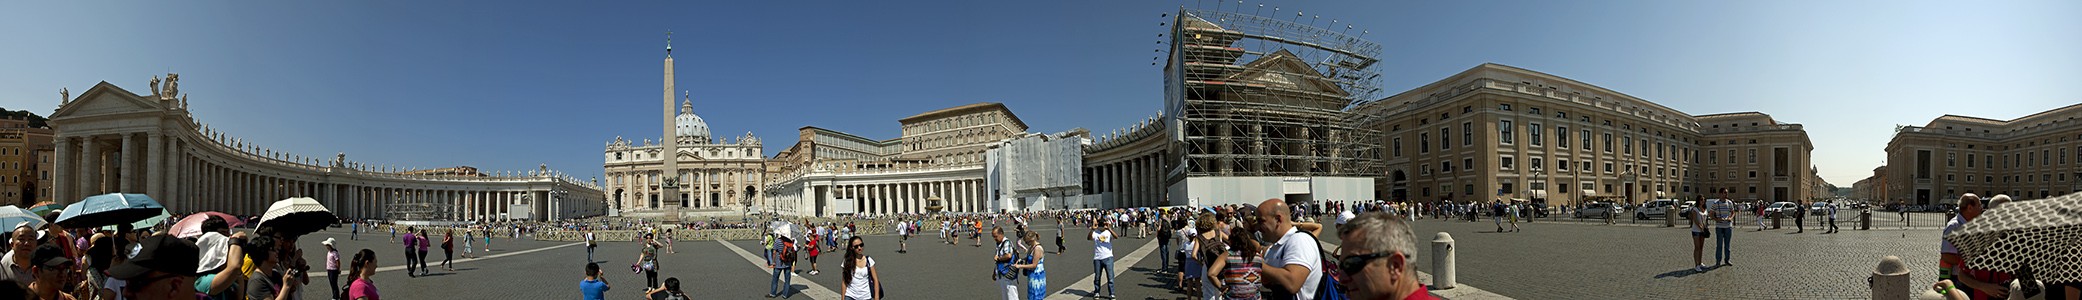 Vatikan Petersplatz, Petersdom